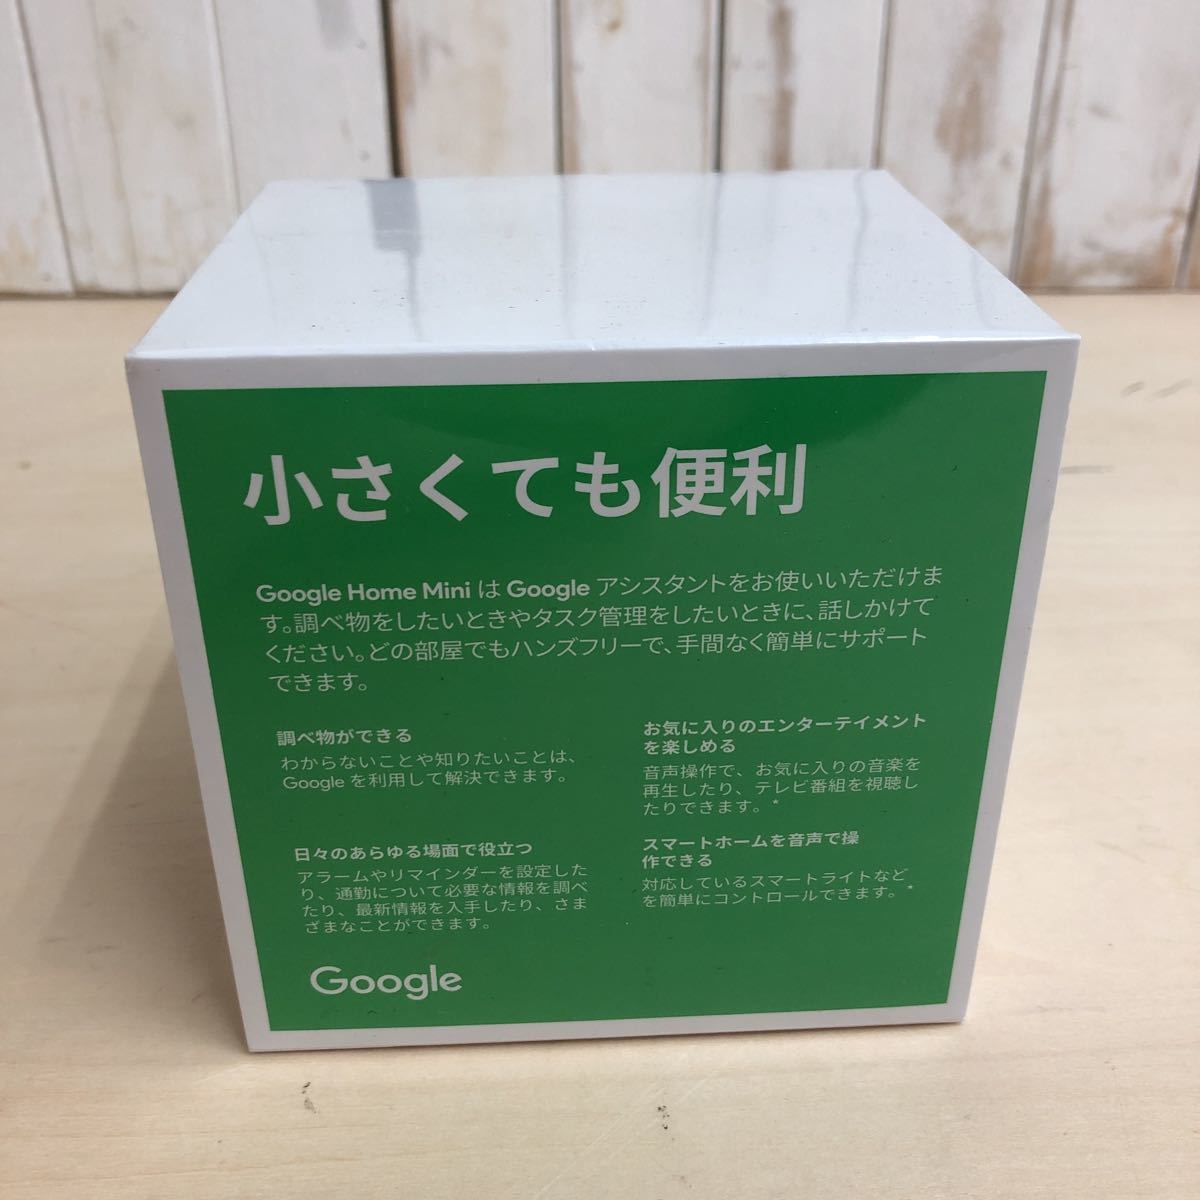     原文:新品 未開封 Google Home Mini チャコール 1円スタート